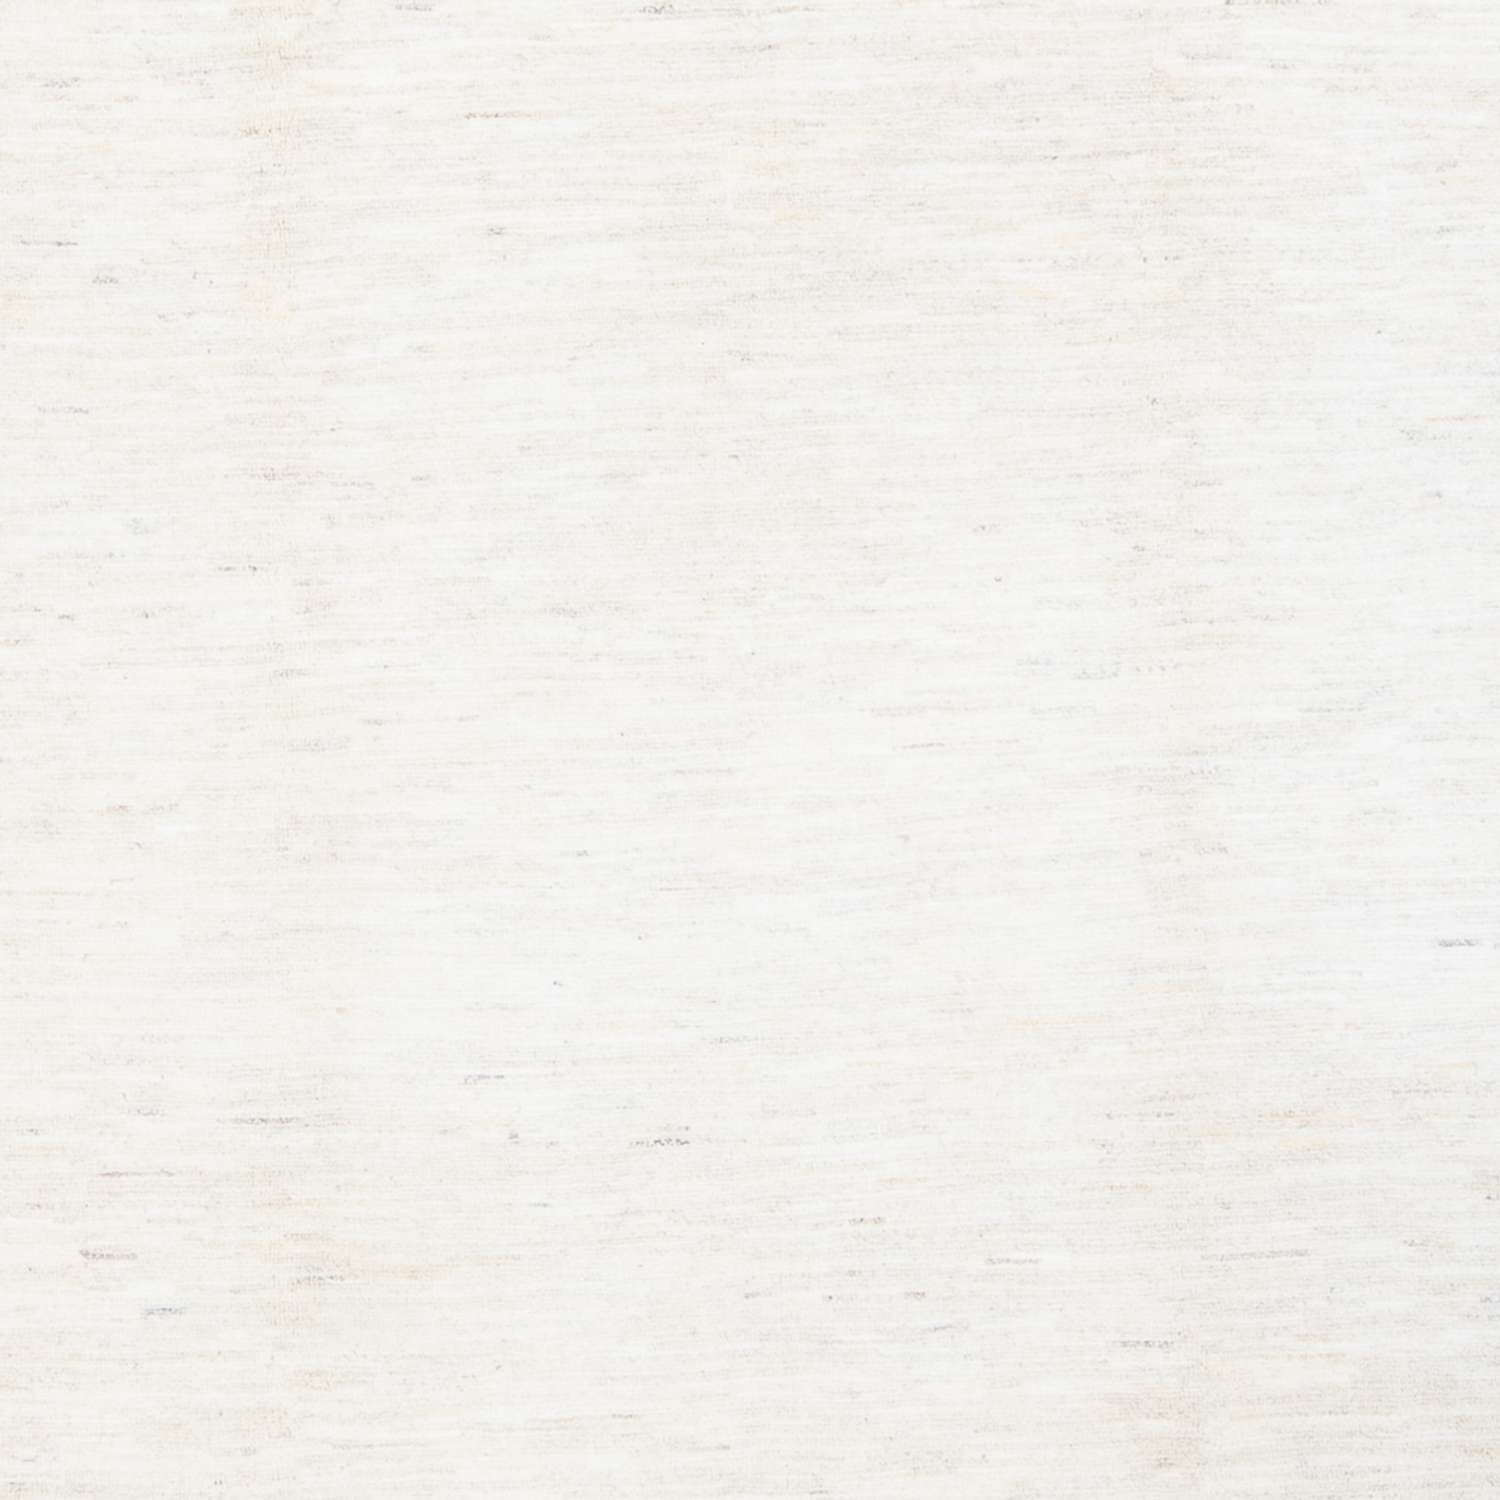 Tapete Gabbeh - Persa - 296 x 205 cm - branco